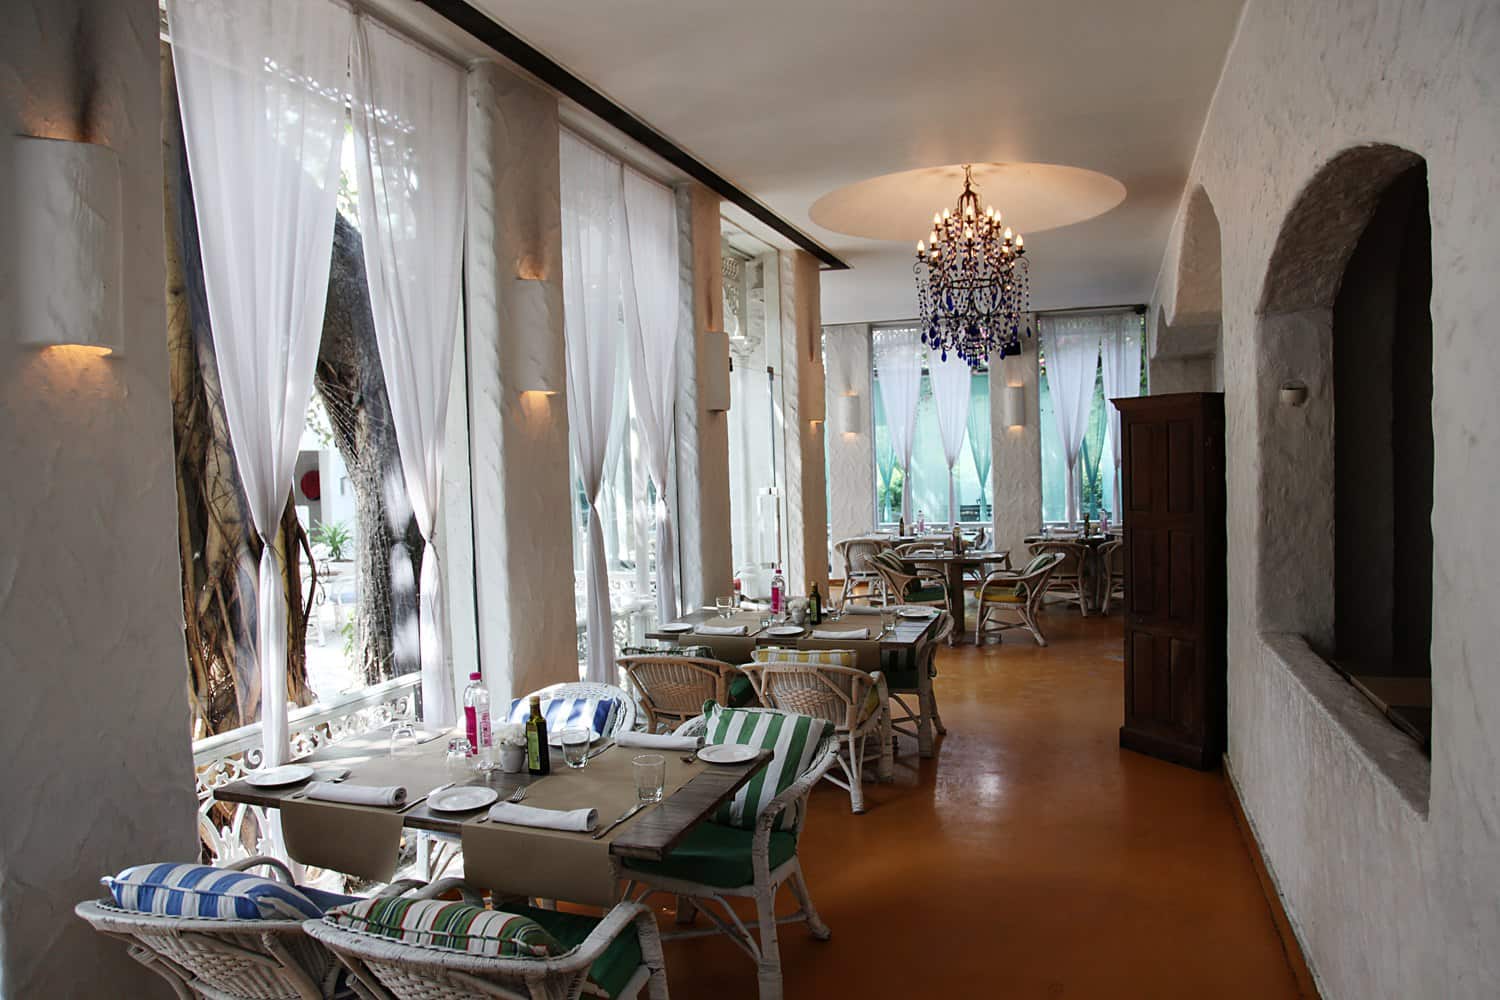 Olive Bar & Kitchen, Mehrauli, New Delhi | Zomato